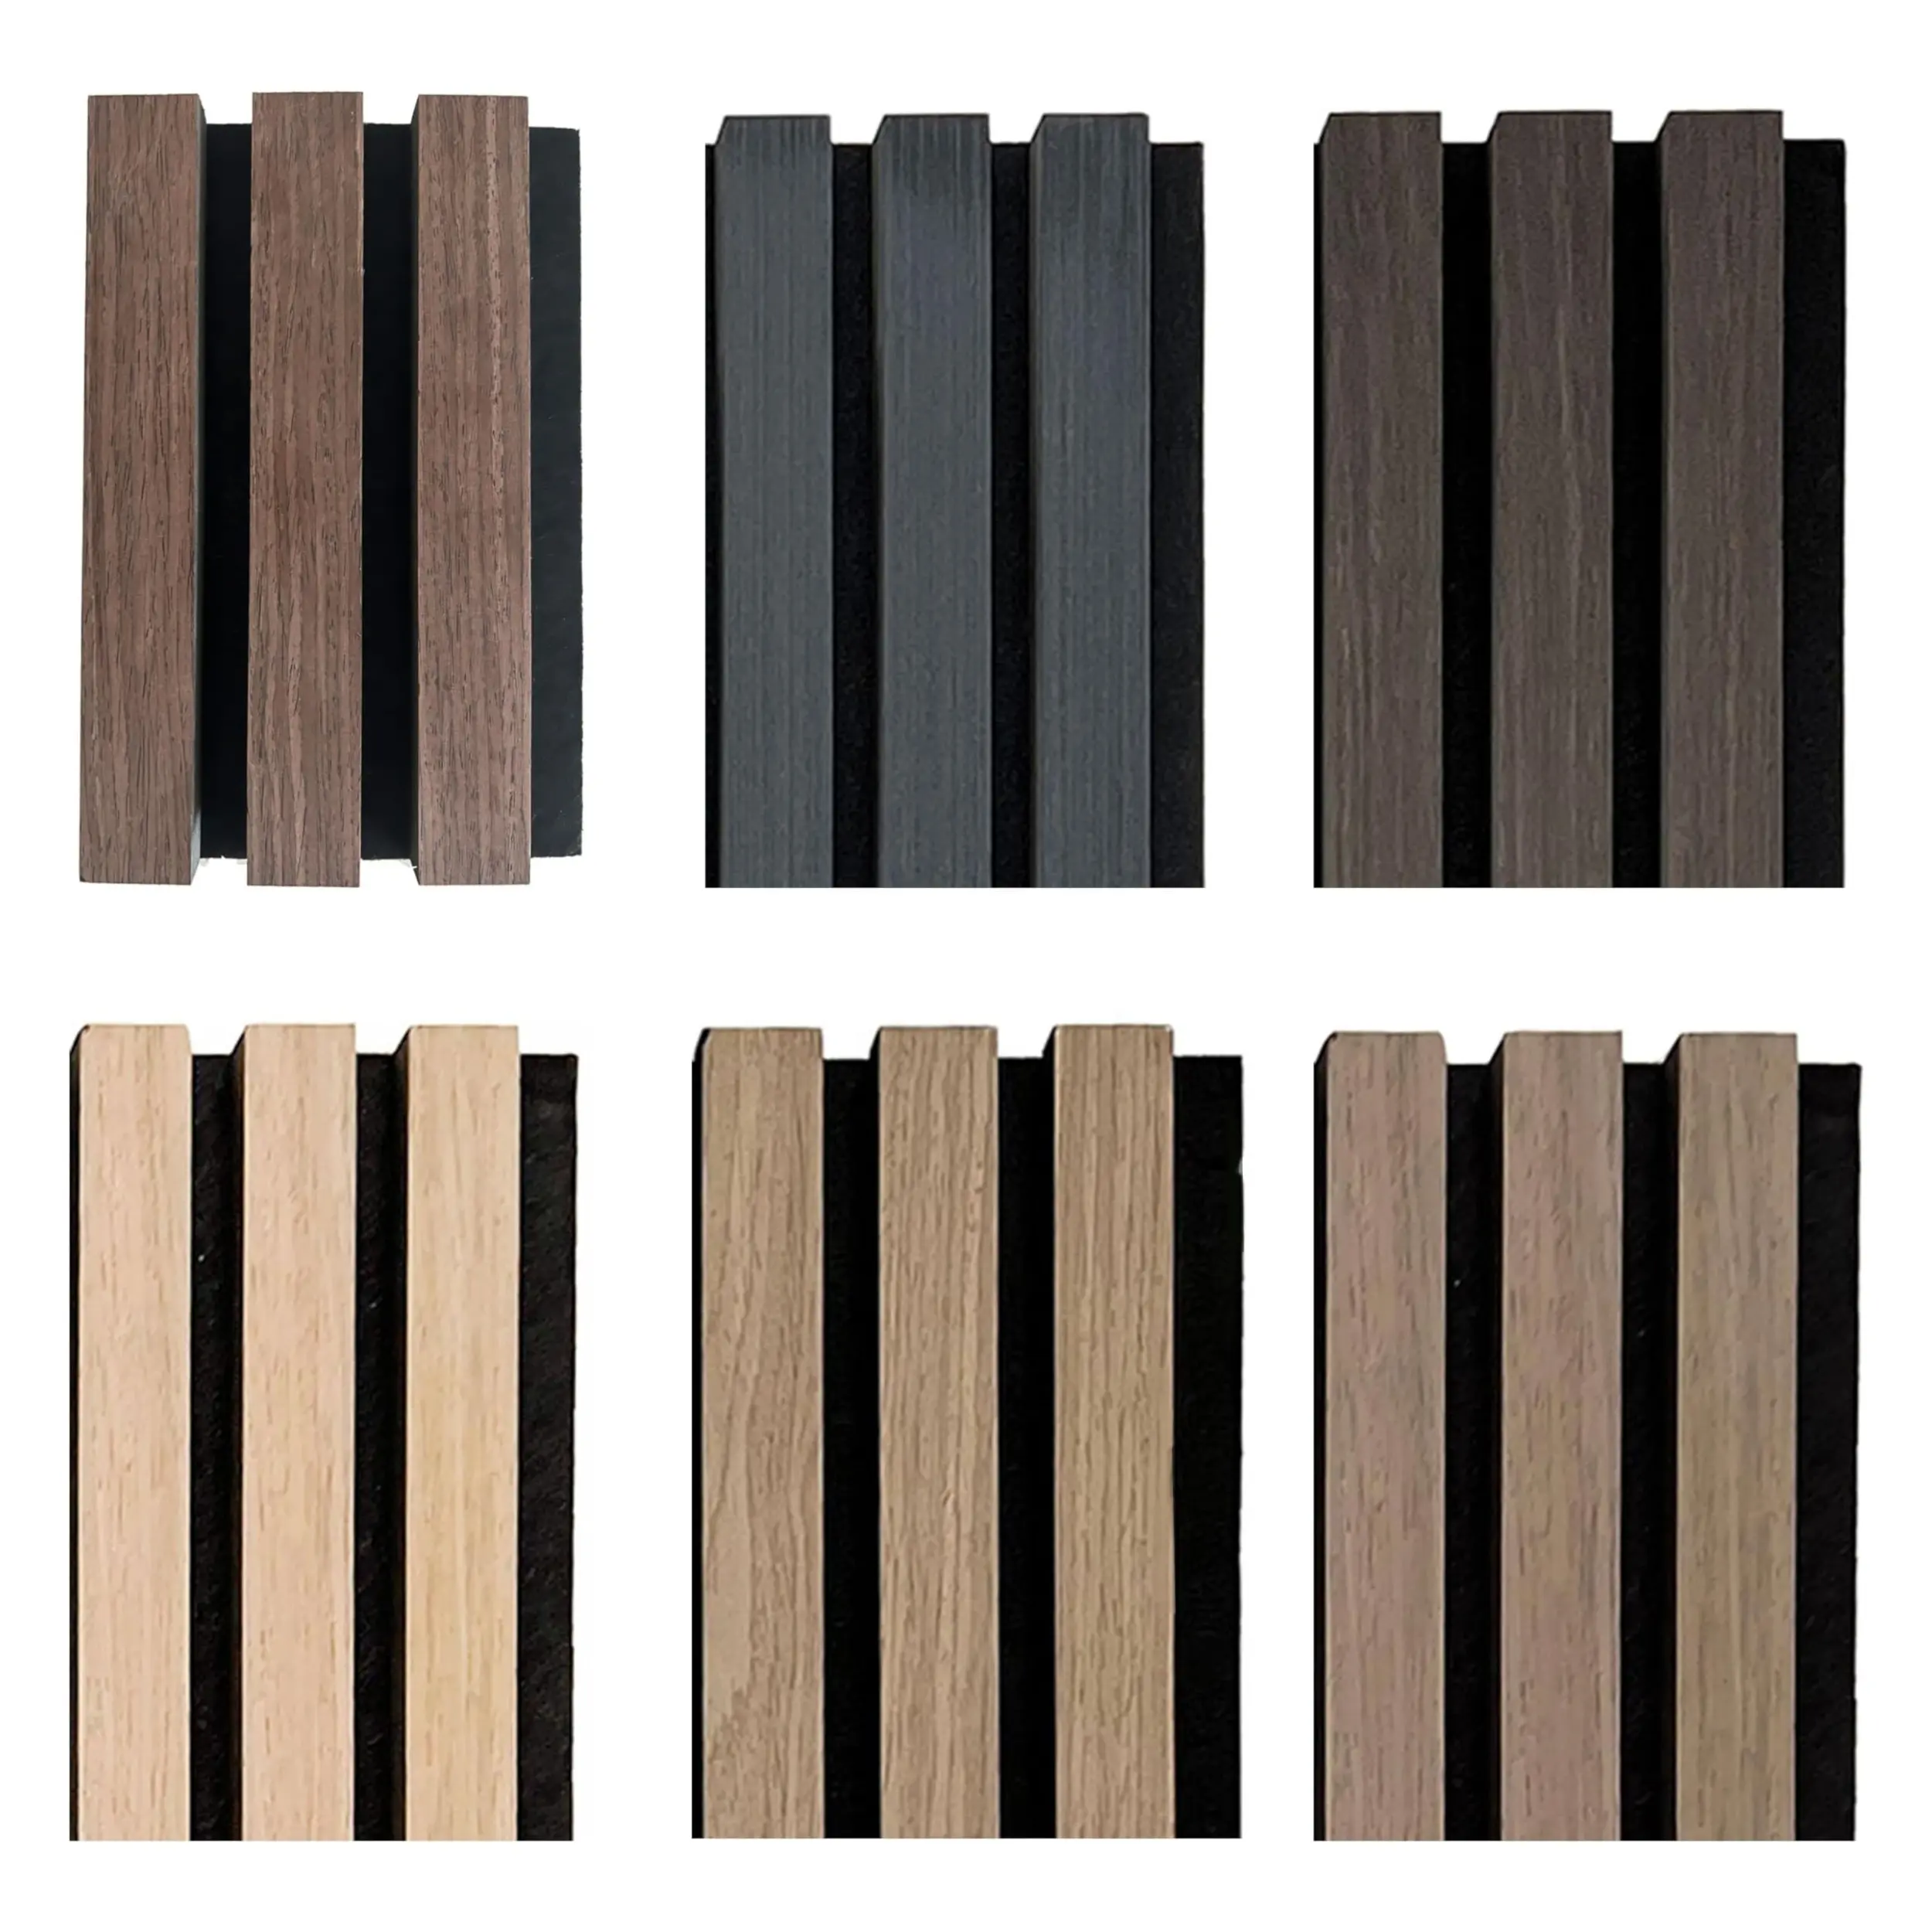 Akupanel insonorizado de fibra de poliéster y paneles acústicos de madera con listones de MDF con chapa de madera técnica o chapa de madera natural